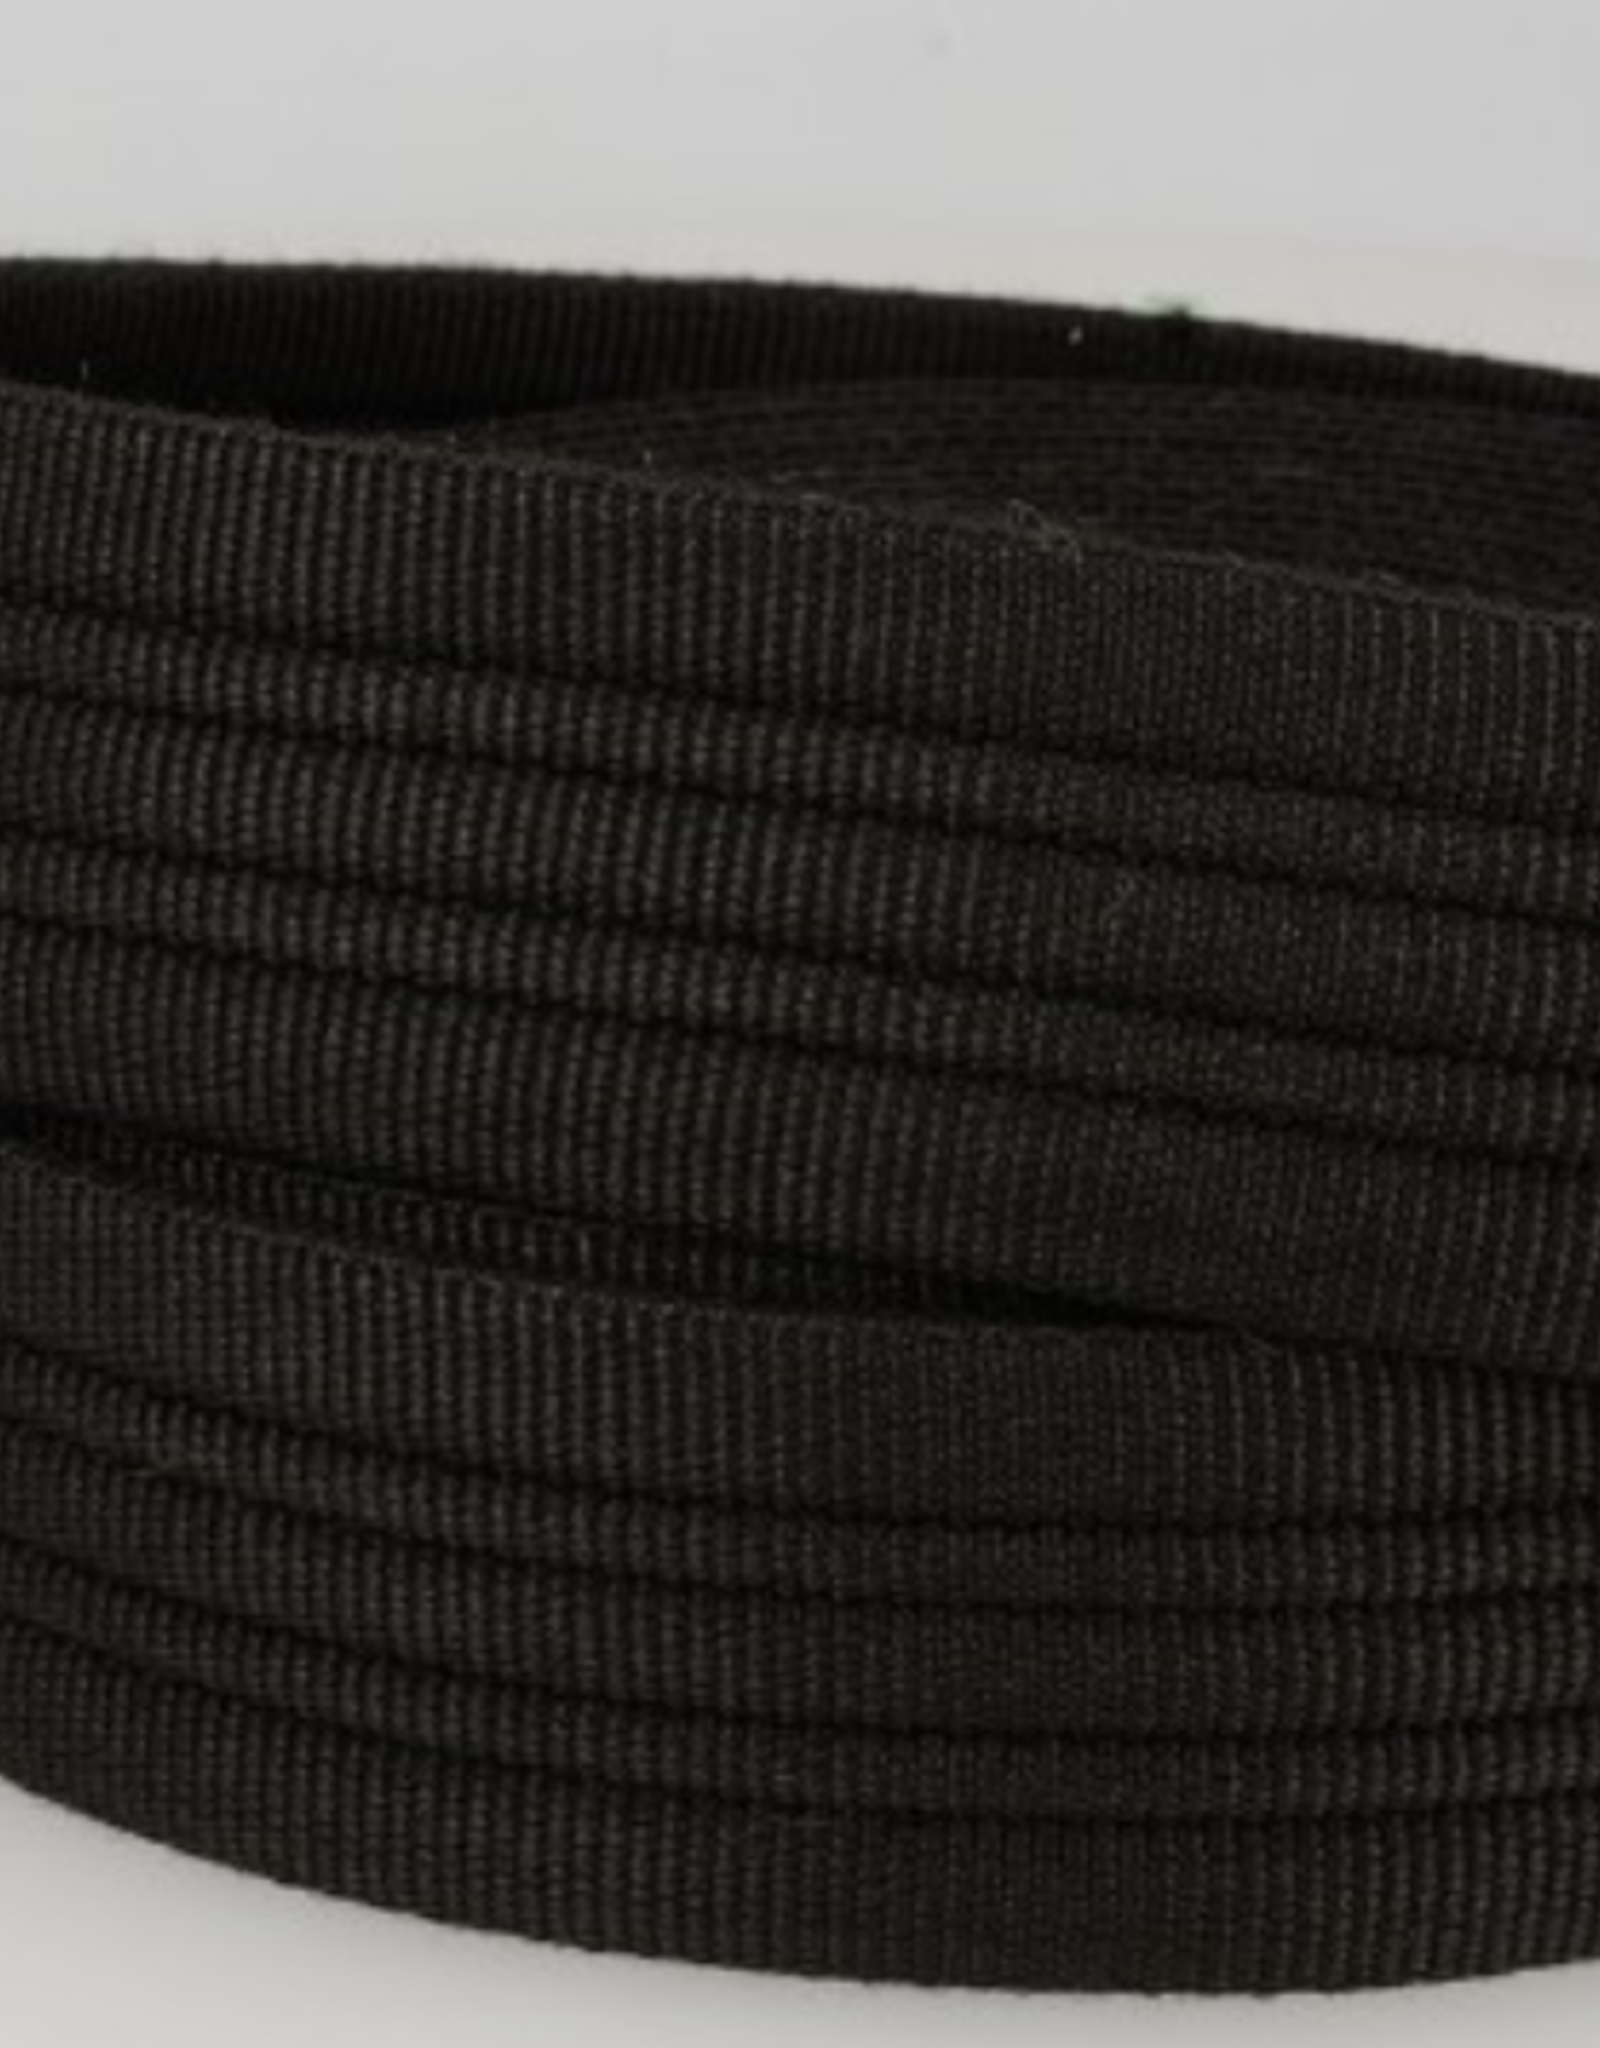 Tassenband doorstikt 38mm zwart col.014